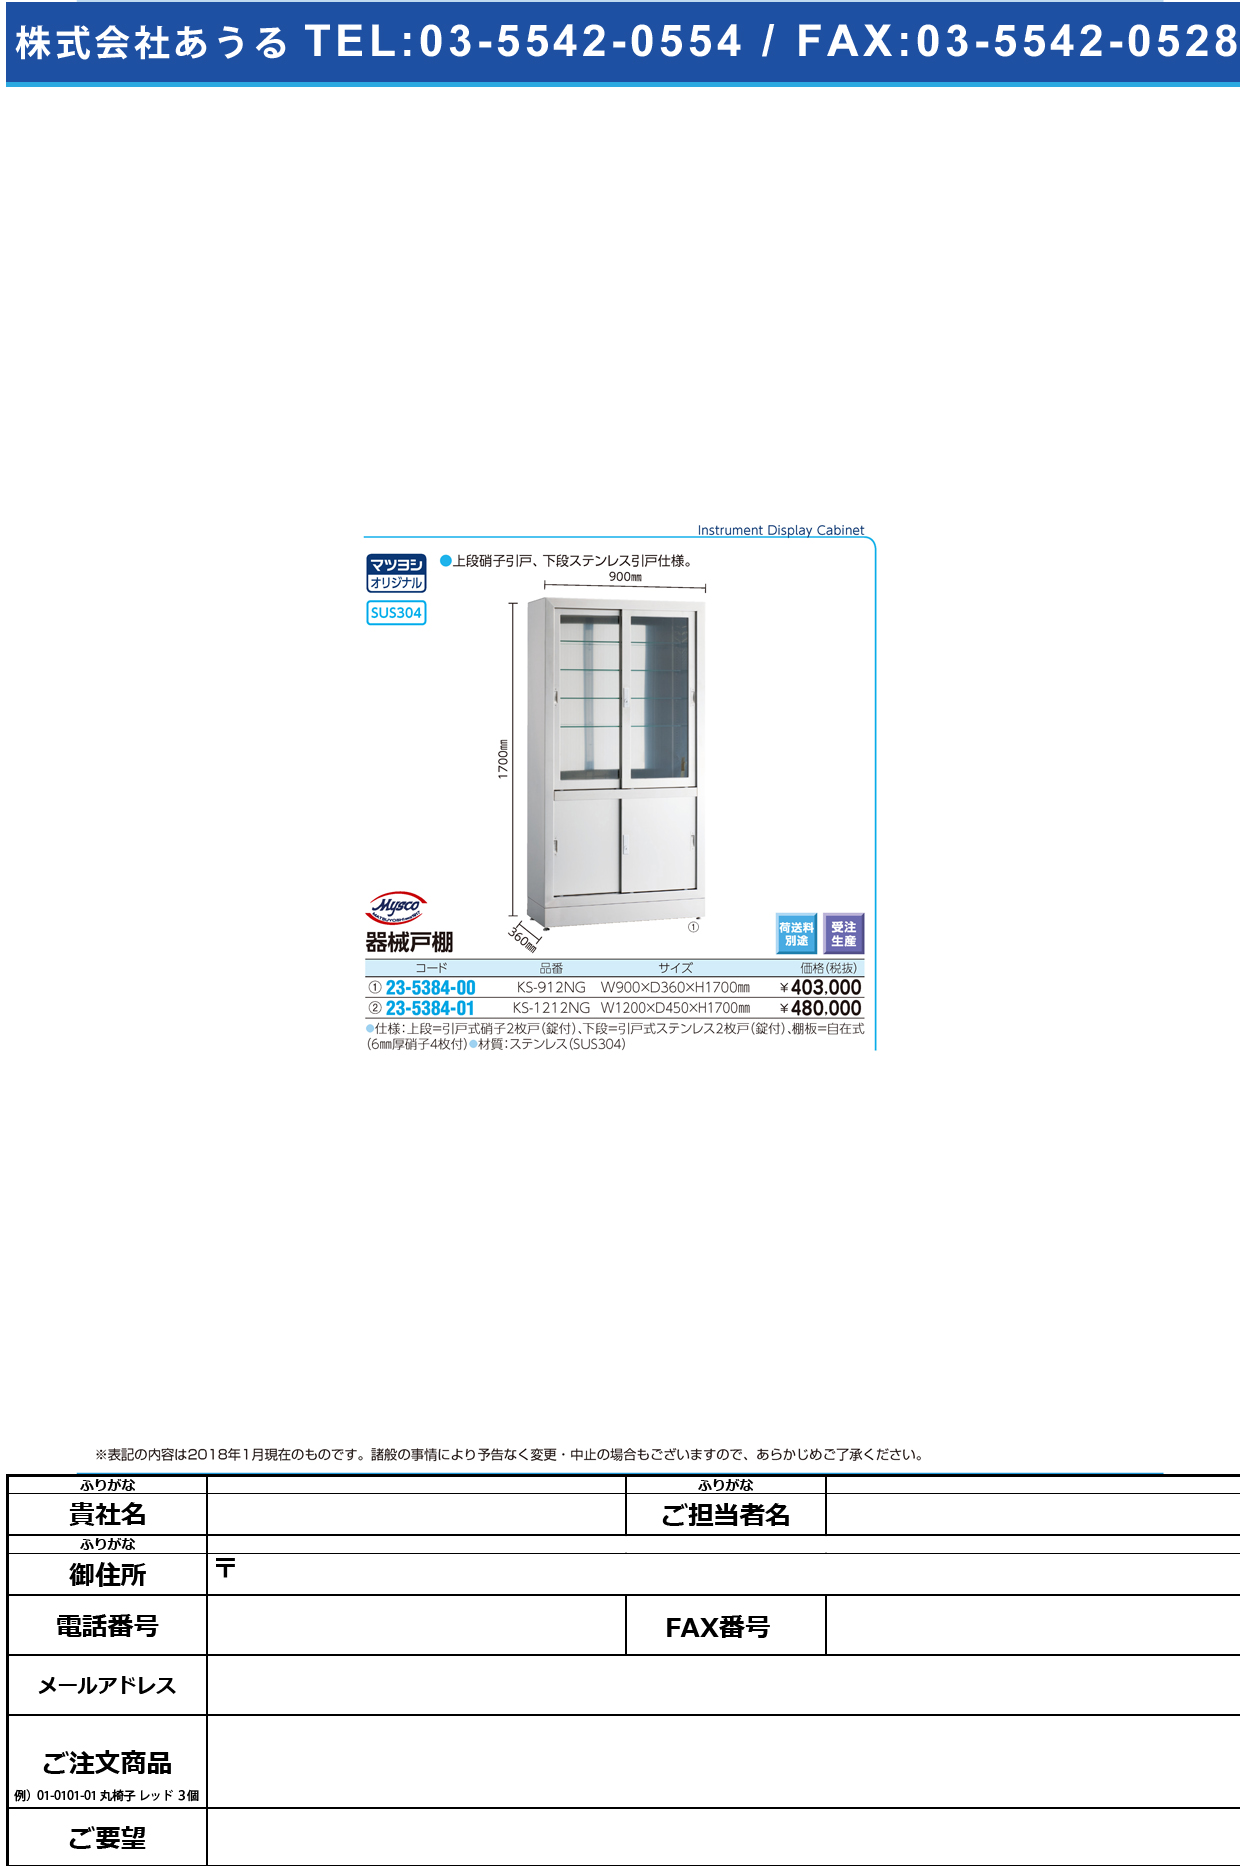 (23-5384-00)器械戸棚（ステンレス製） KS-912NG(90X36X170CM ｷｶｲﾄﾀﾞﾅ 側面ステンレス【1台単位】【2019年カタログ商品】